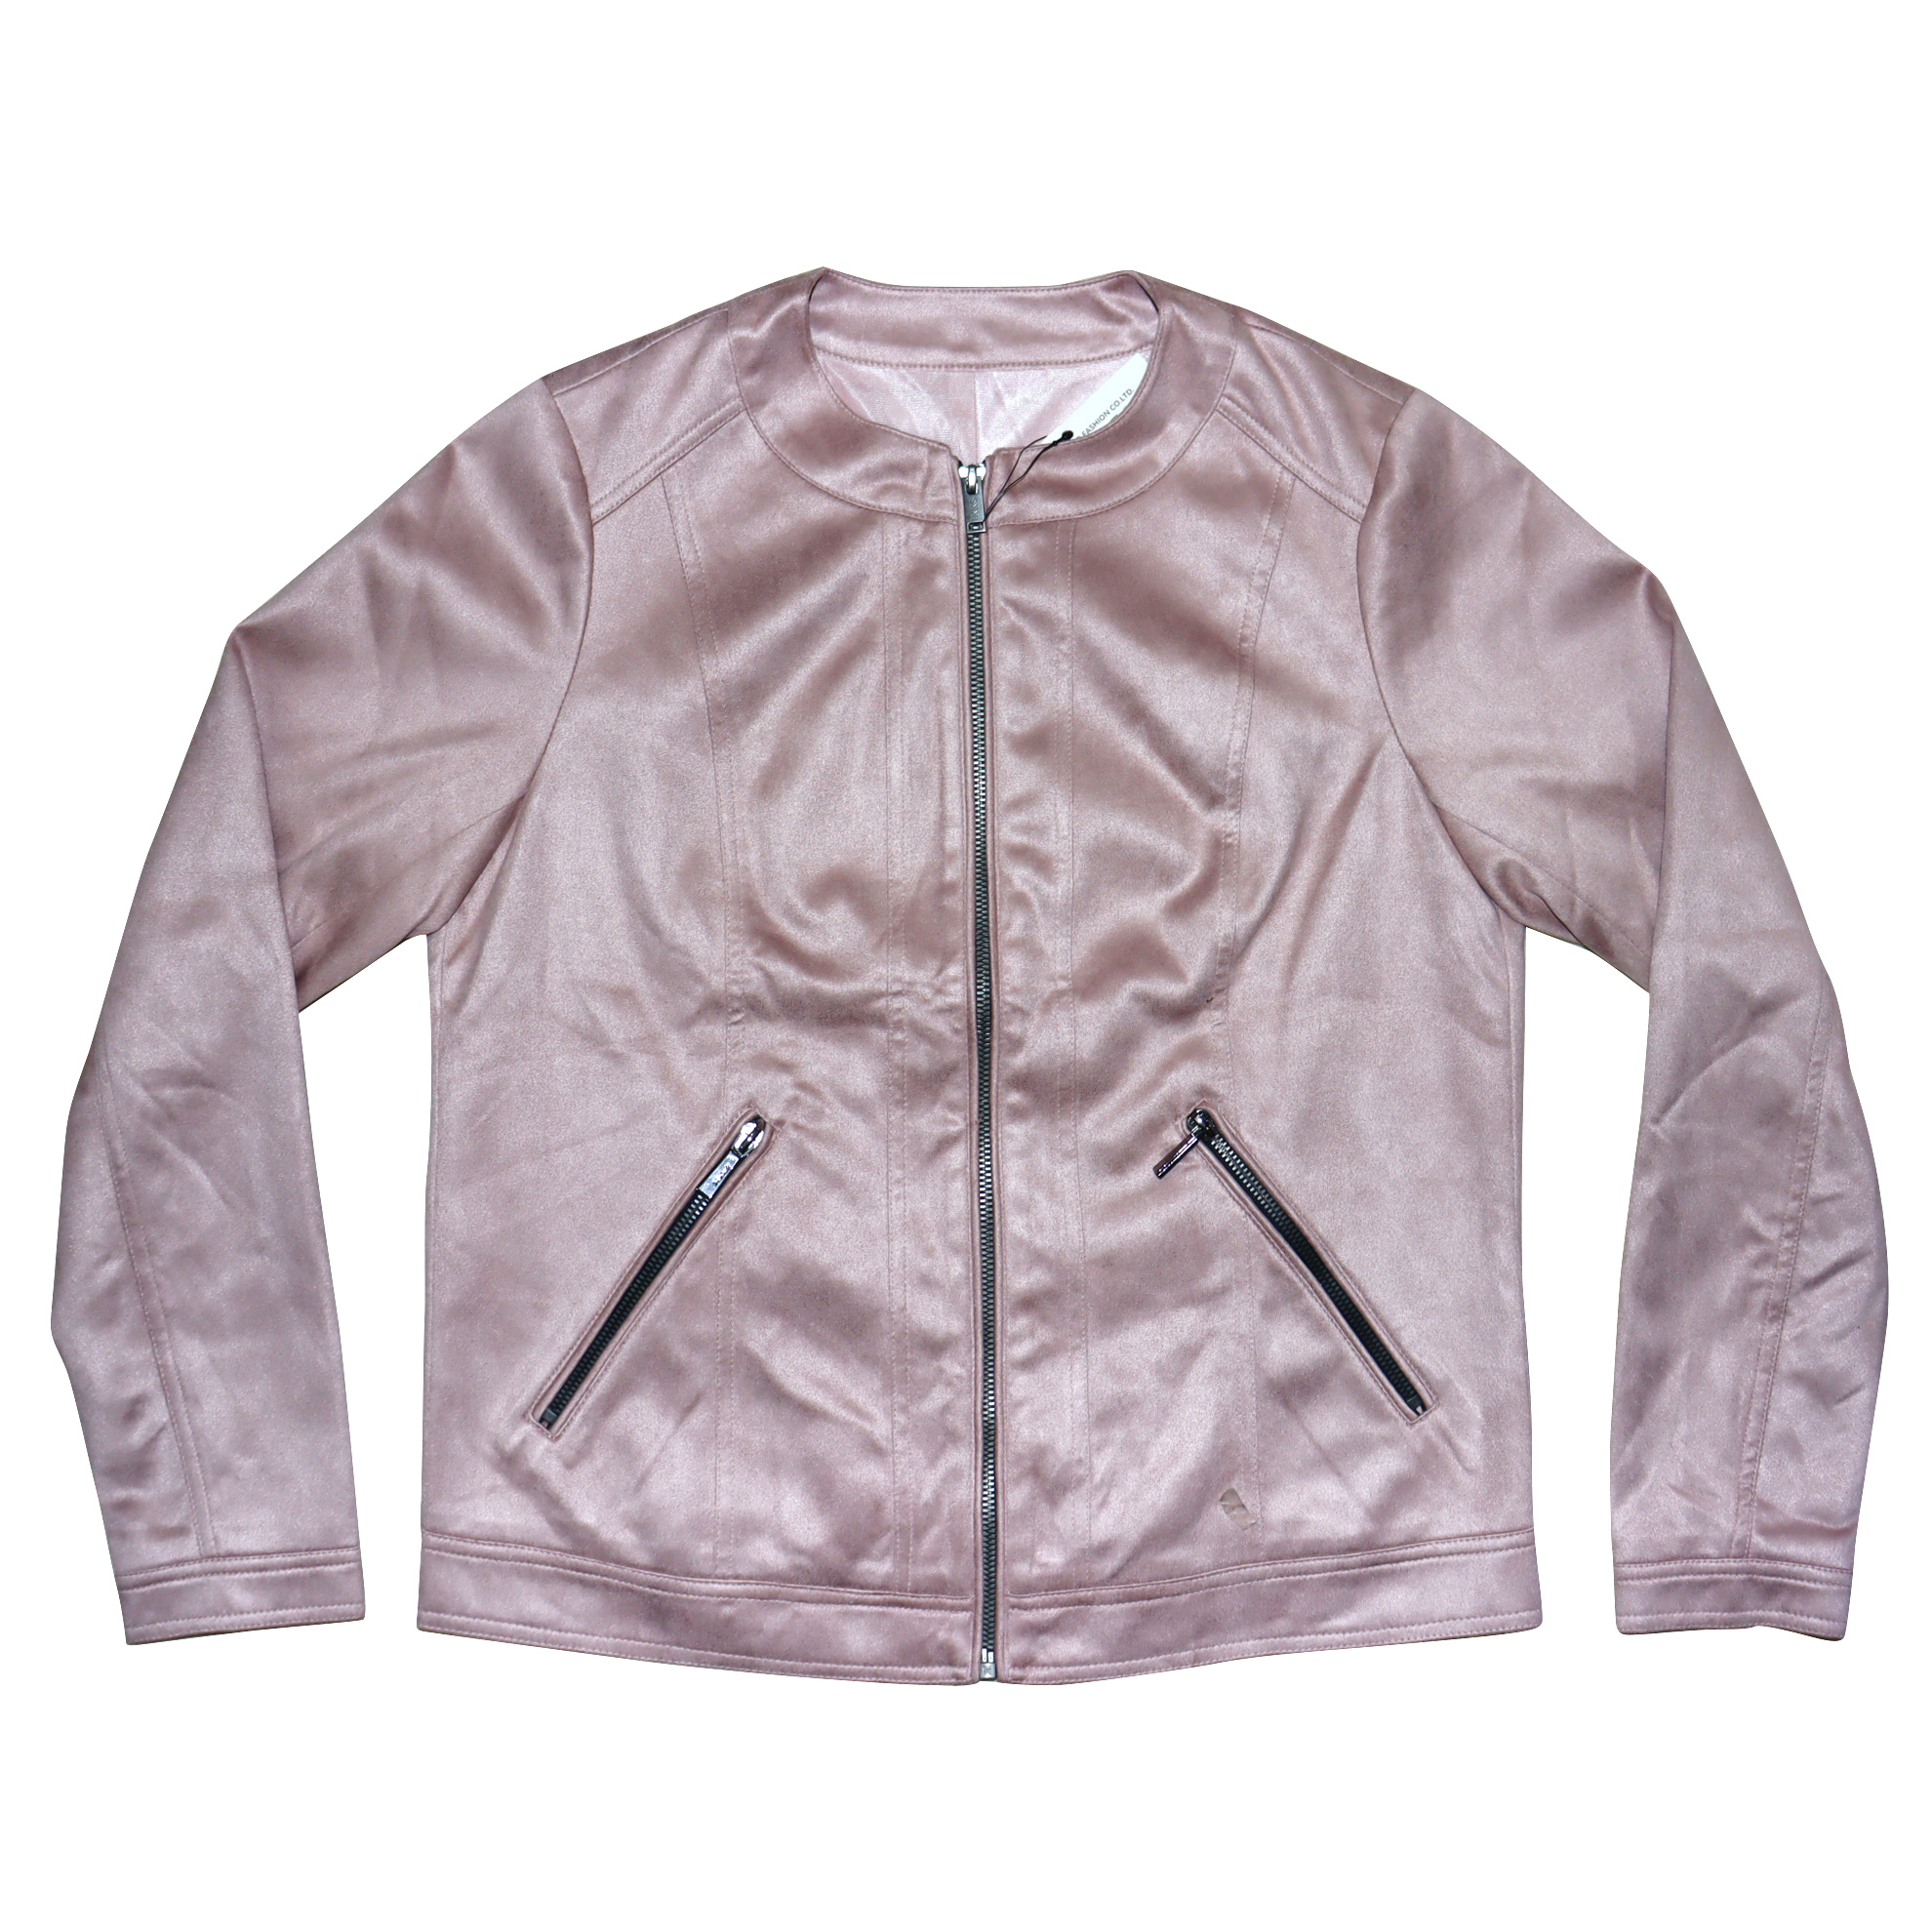 Ladies jacket – MUAZ Fashion Ltd.